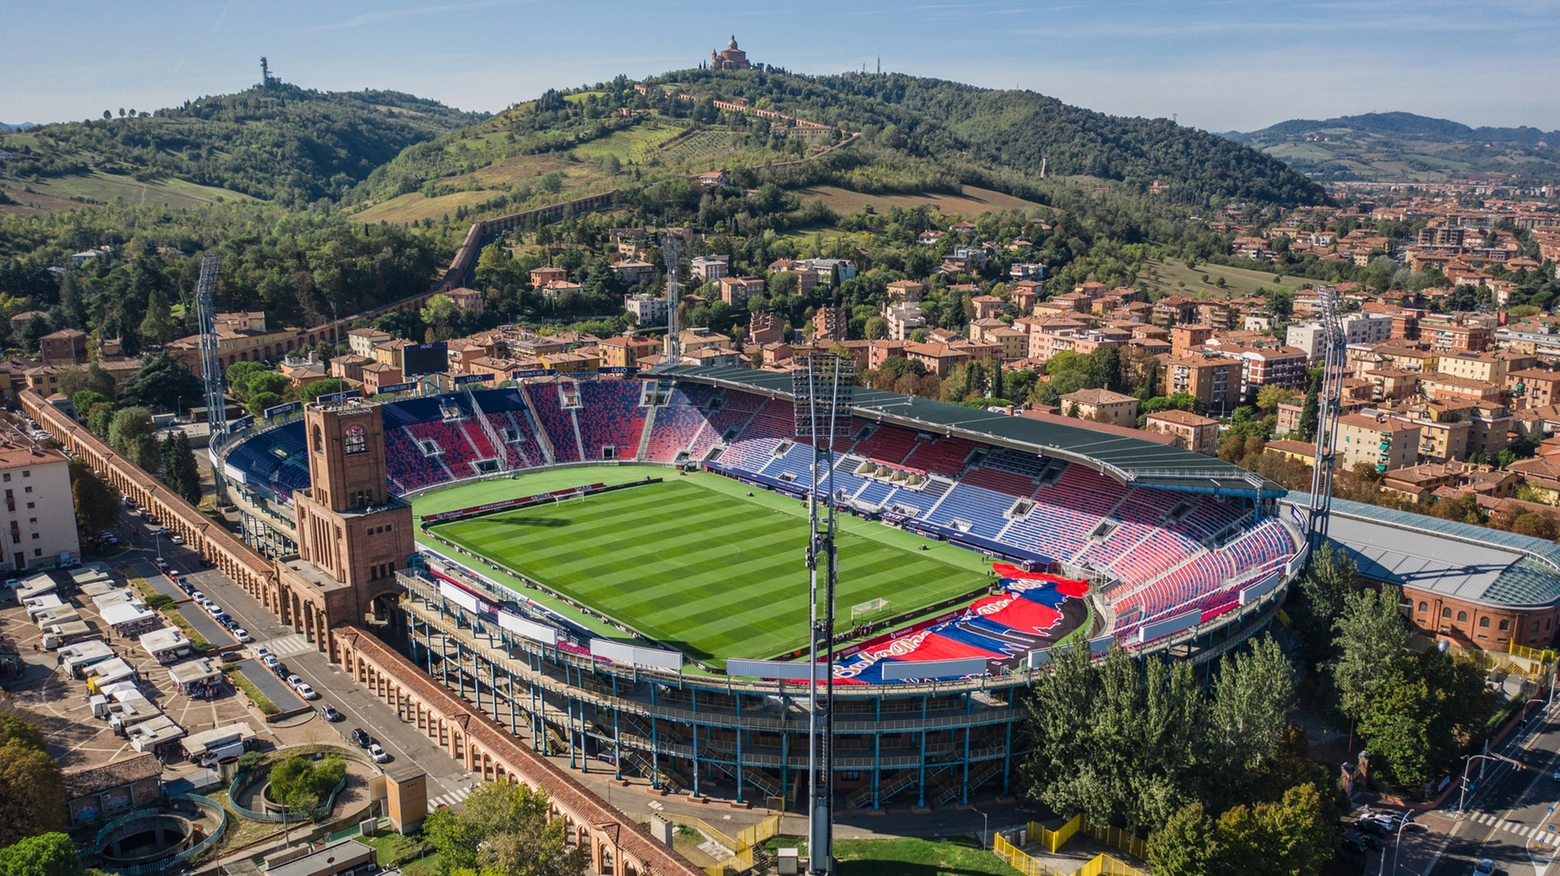 Bologna, Italy, September 2019 - Aerial view of Renato Dall'Ara Stadium